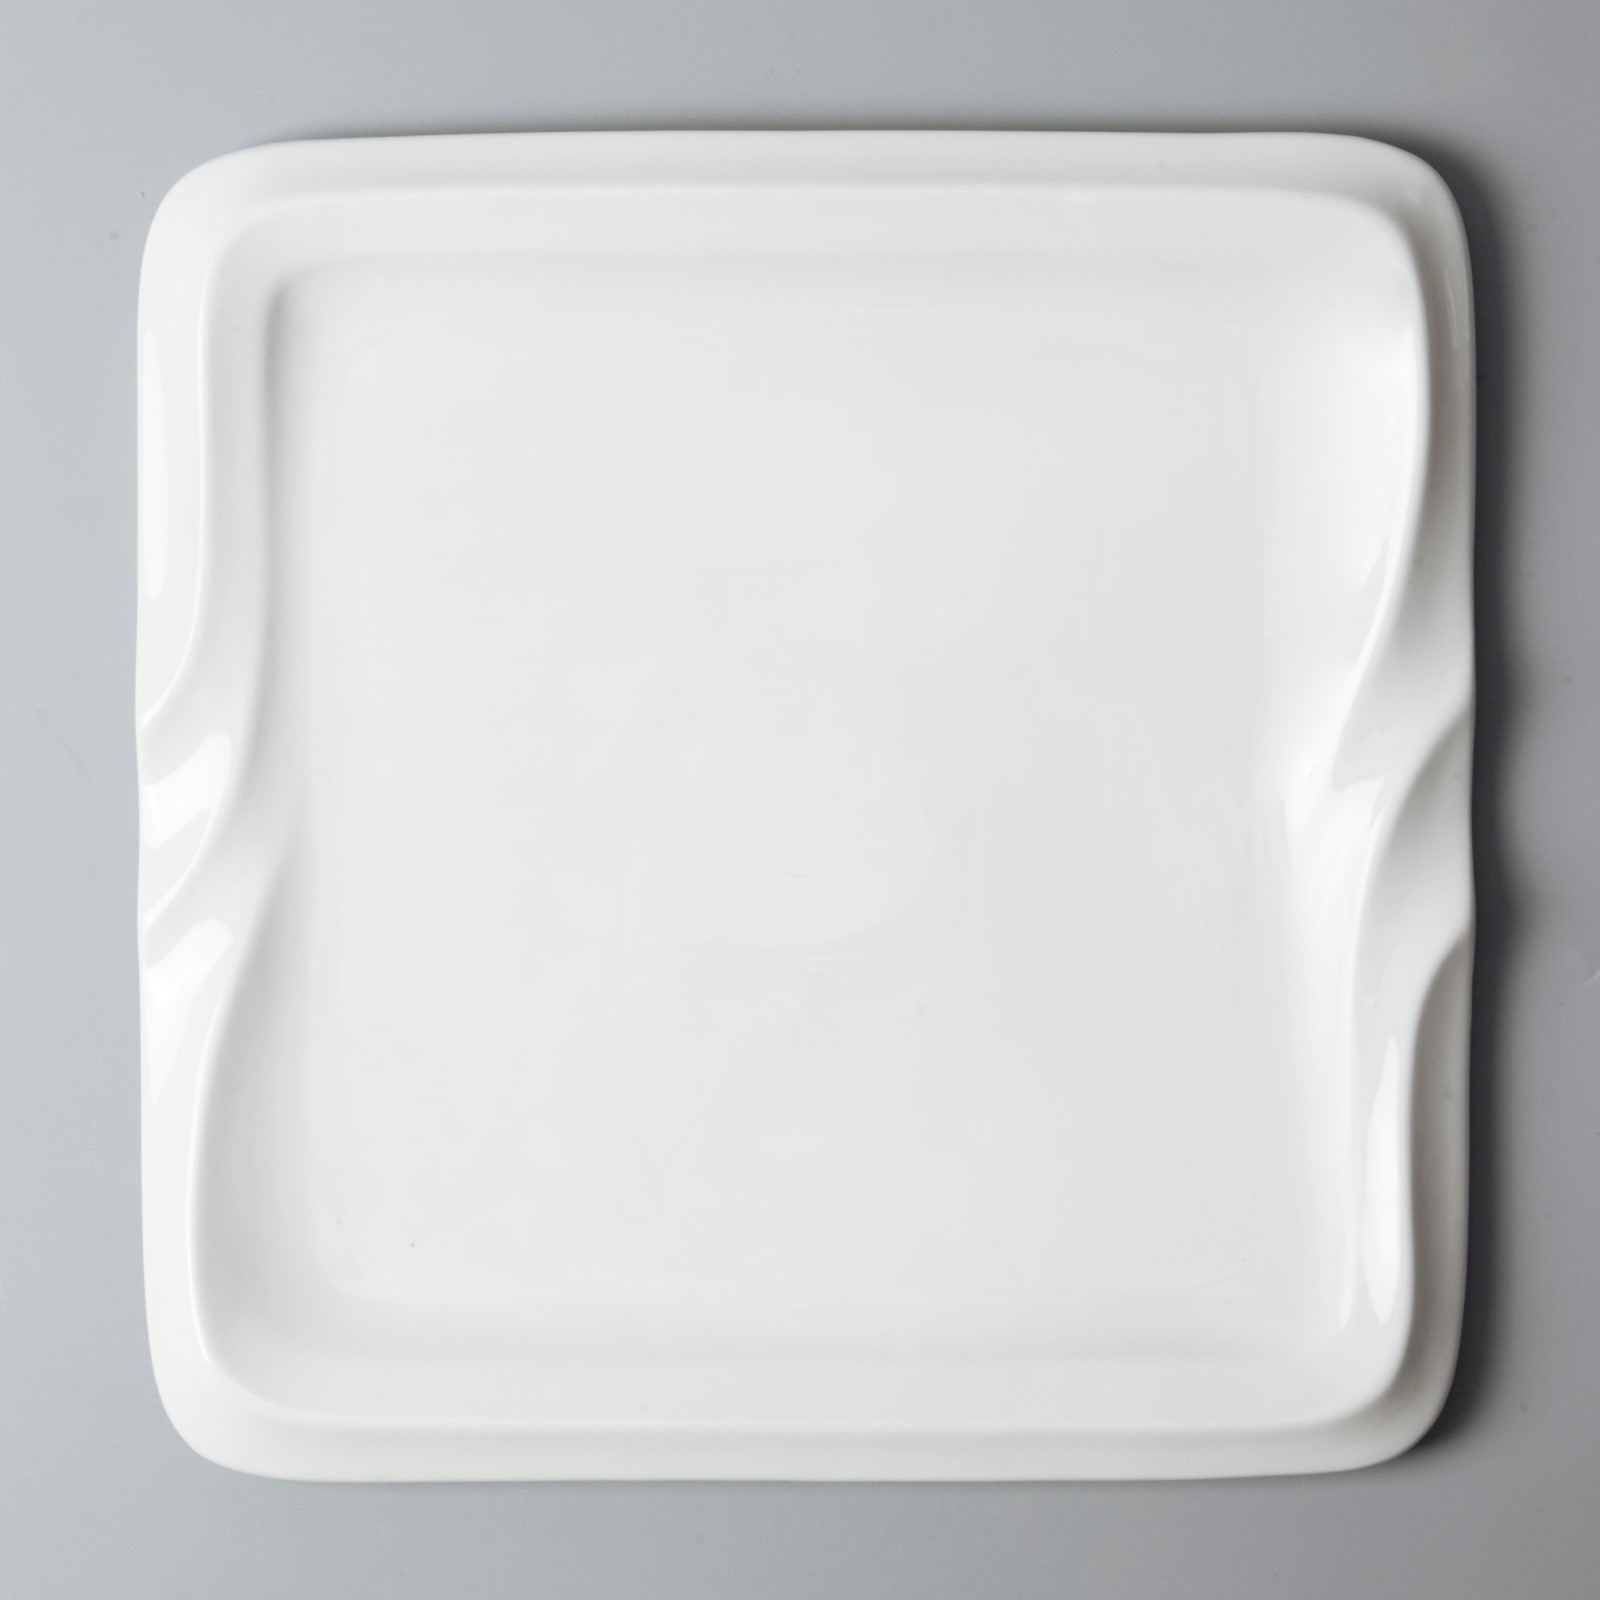 sample fine ceramic dinnerware stock for dinning room Two Eight-12